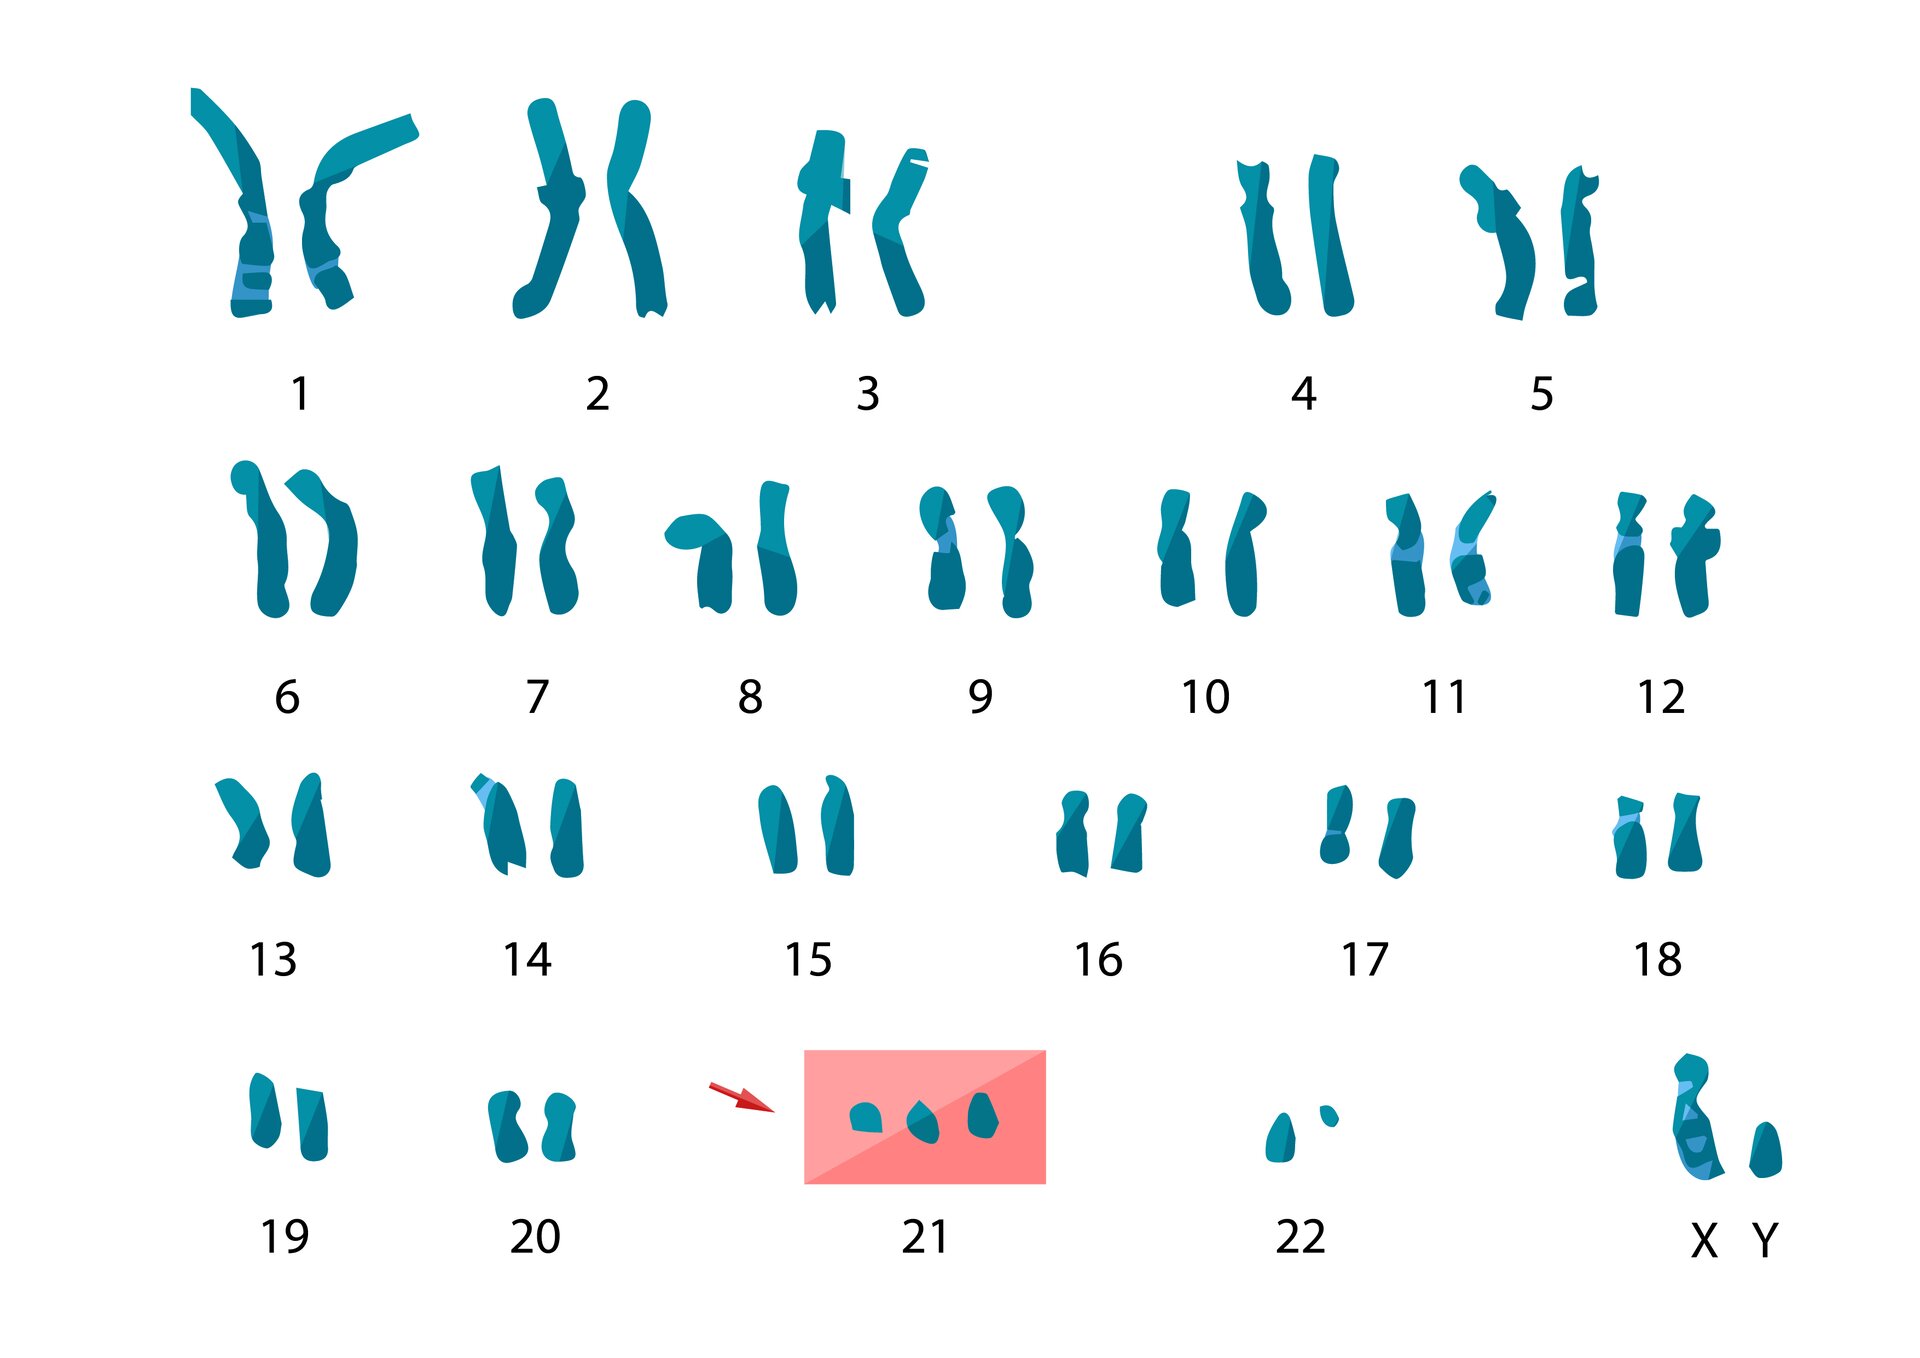 Ilustracja ukazuje 23 pary chromosomów. Przy 21. parze jest dodatkowy, trzeci chromosom. Największa jest para chromosomów pierwsza i druga, najmniejsza 22. 23 para chromosomów to XY.  X jest większe od Y. 